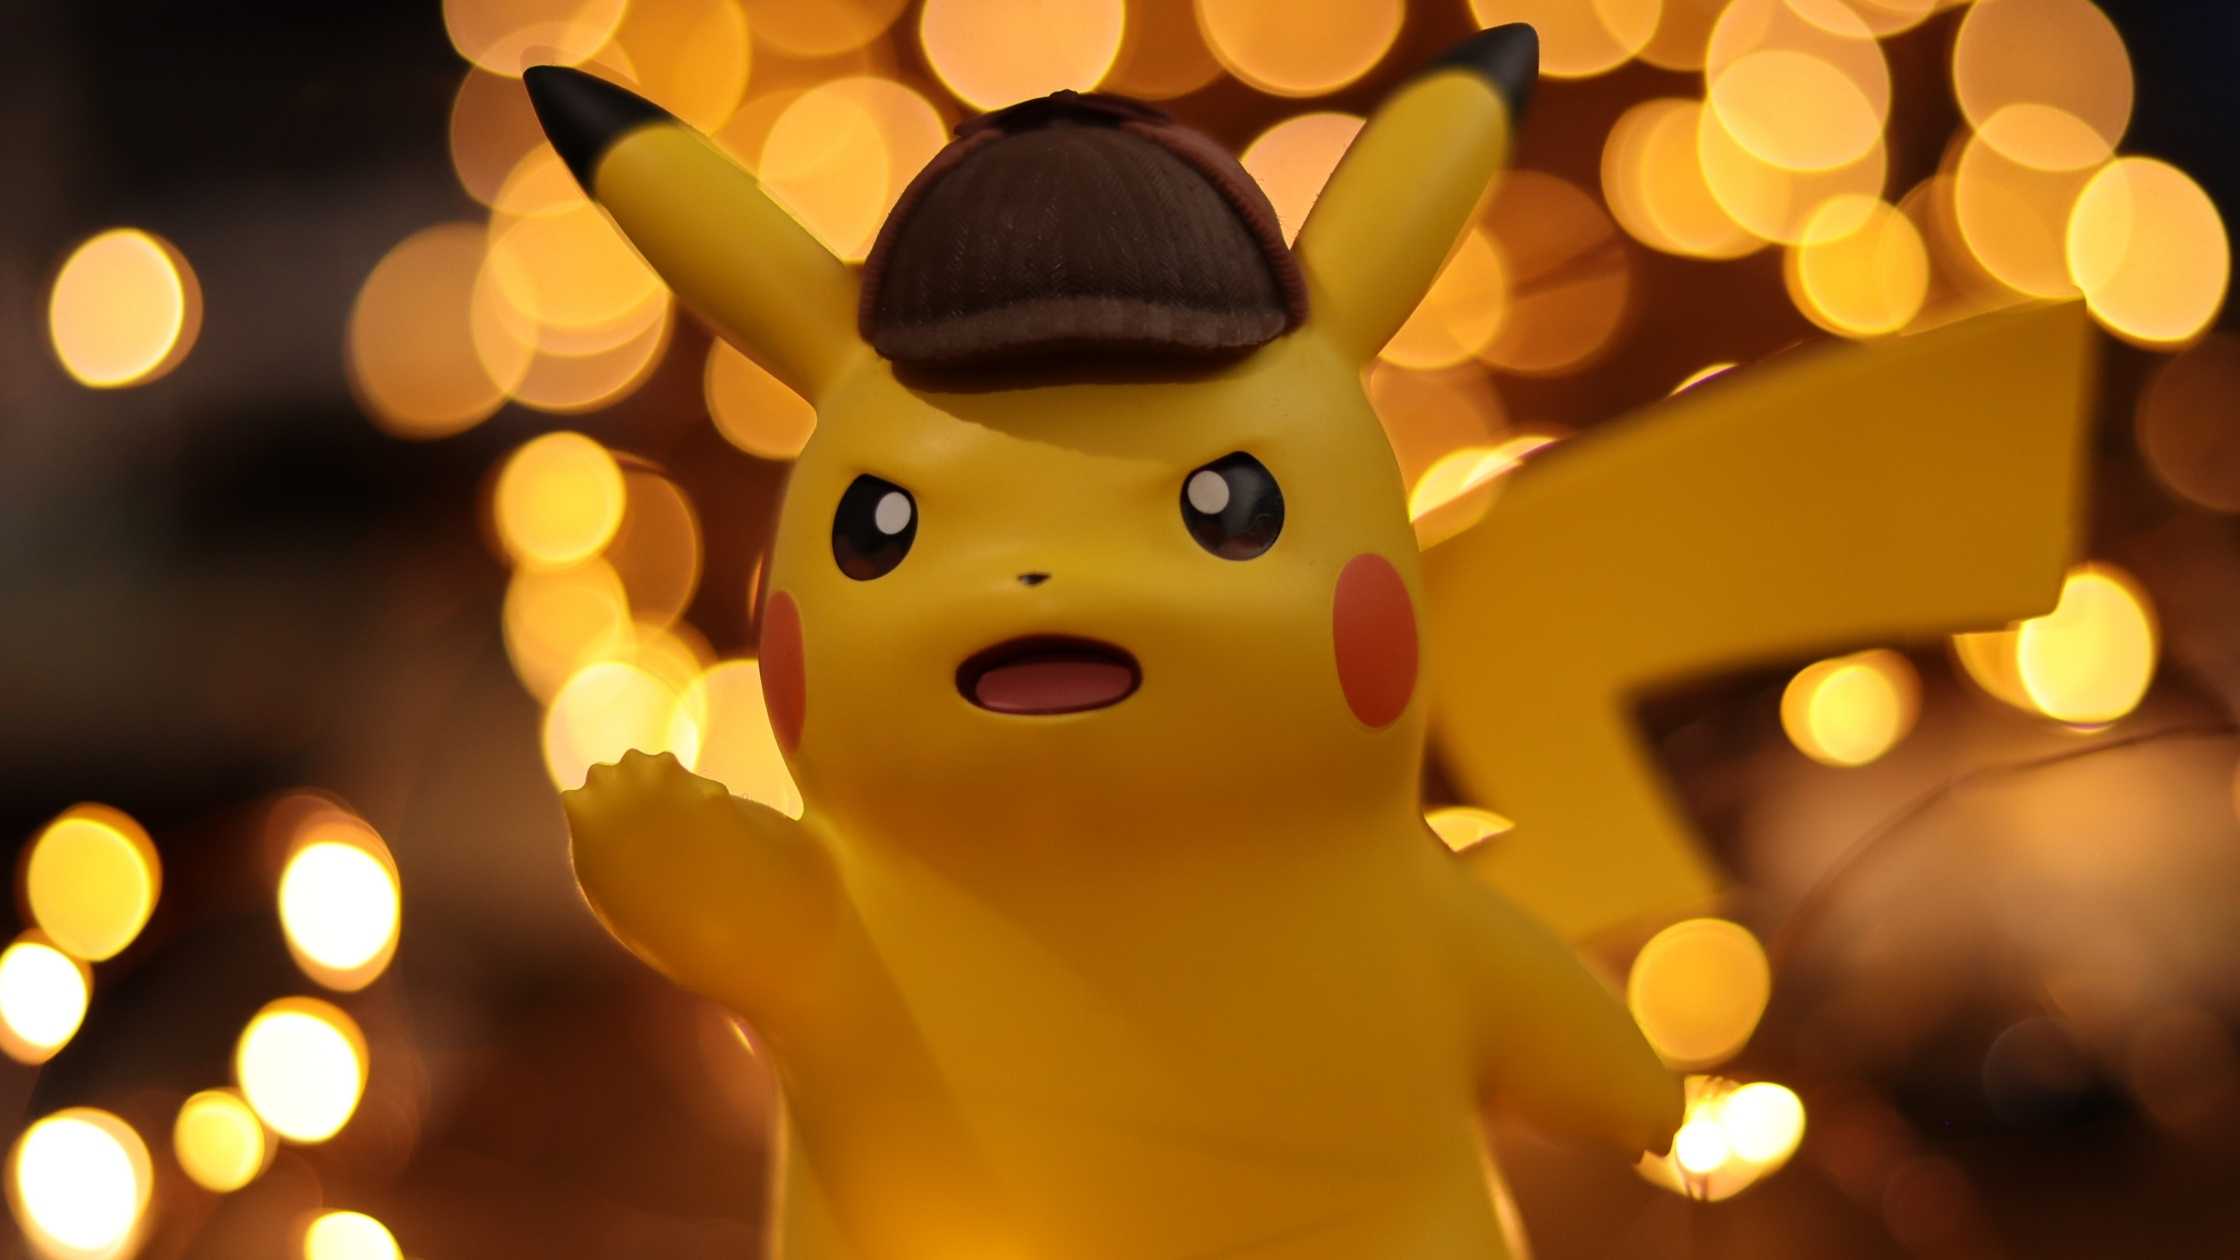 Close up of Pokemon Pikachu figure